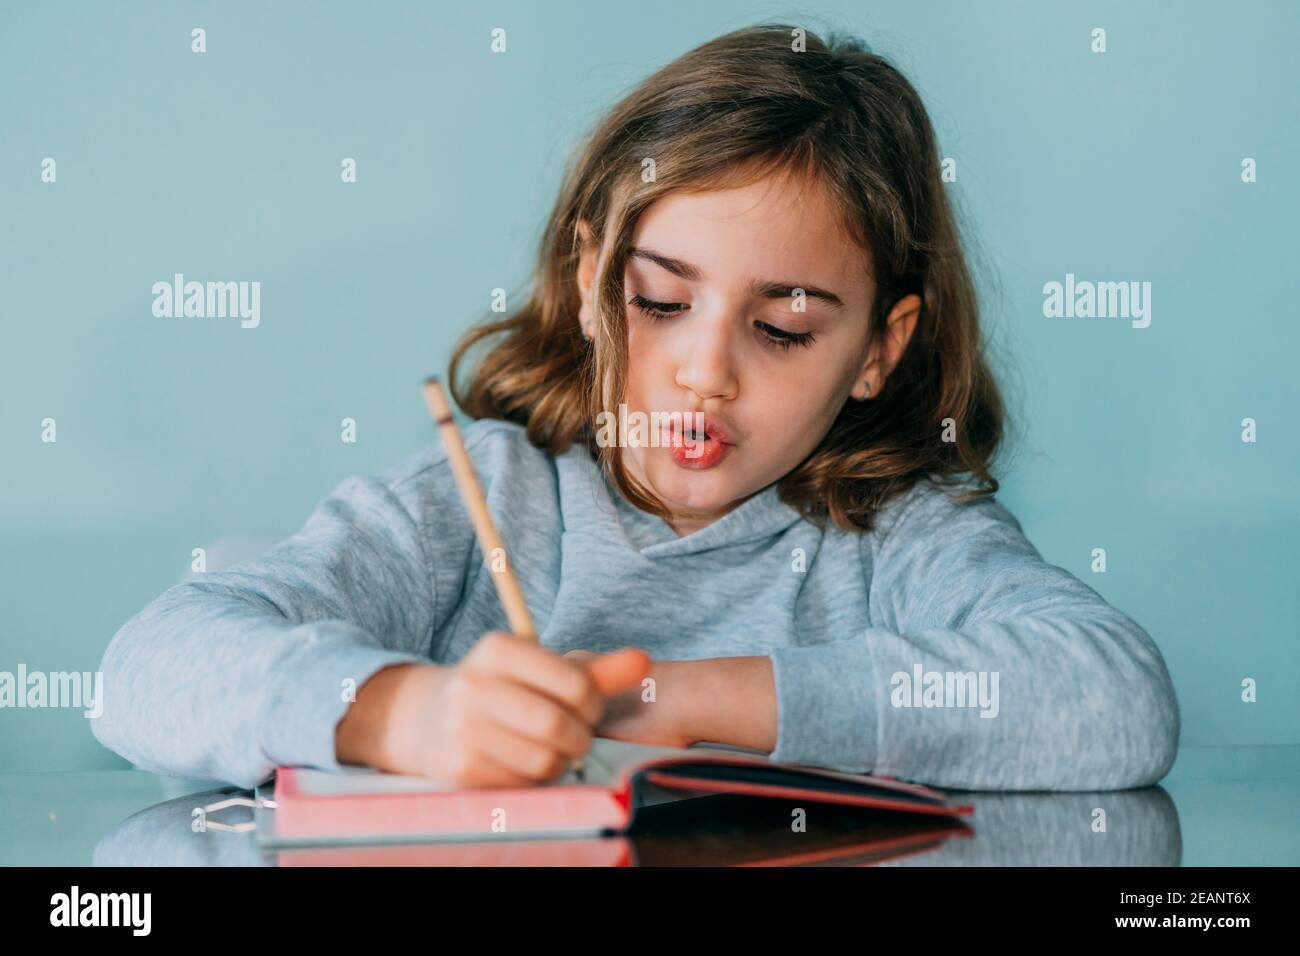 Liebenswert kleines Mädchen schreibt in einem Notizbuch, hat eine nachdenkliche und lustige Geste. Horizontales Foto Stockfoto